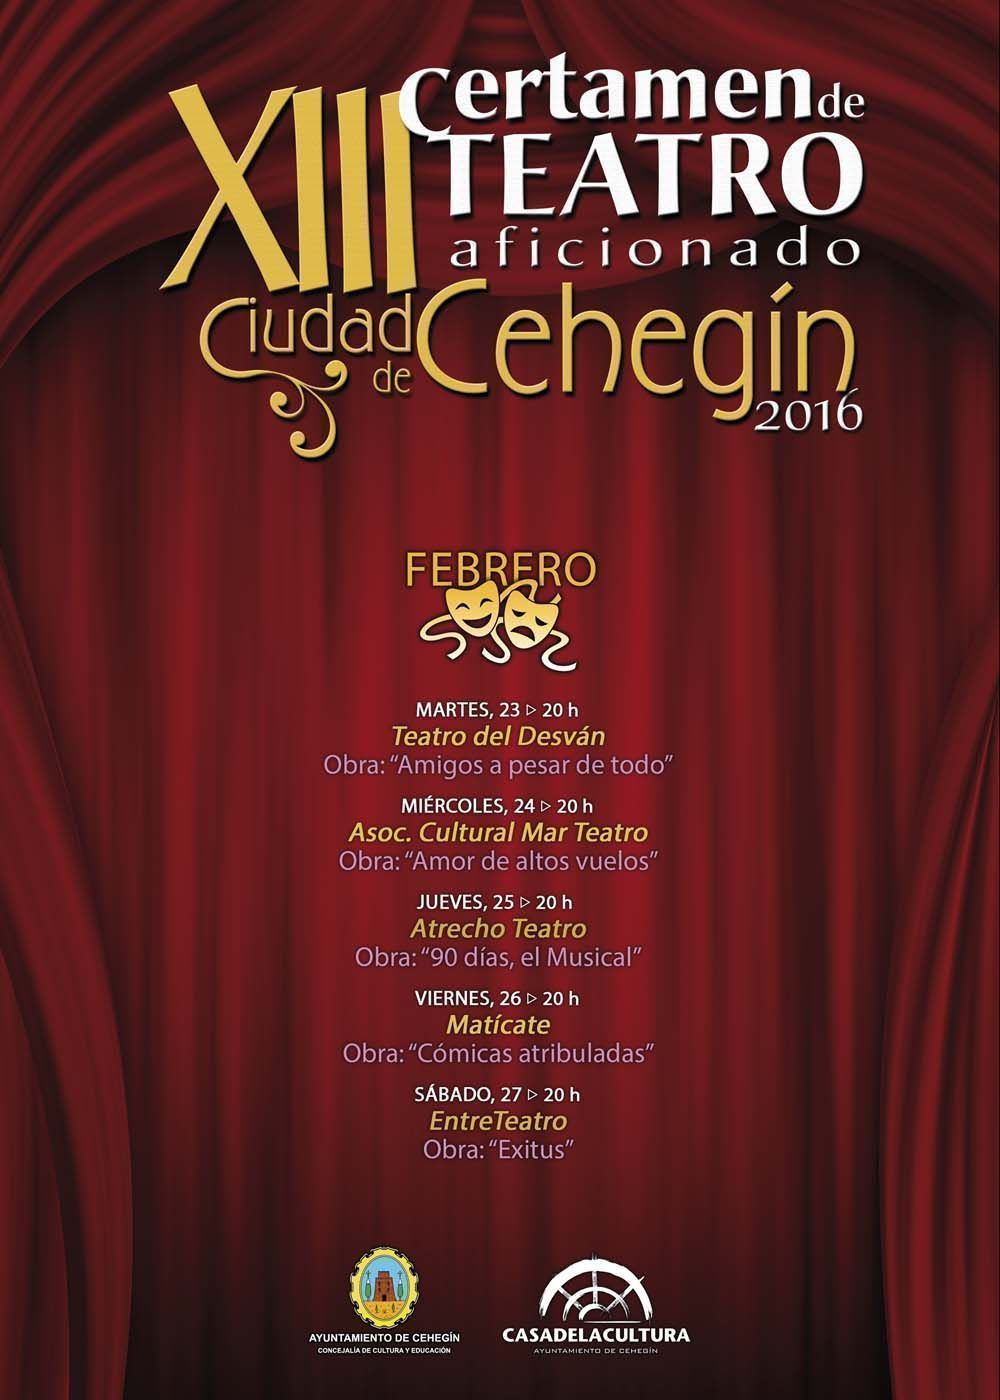 El XIII Certamen de Teatro Aficionado ‘Ciudad de Cehegín’ comienza el lunes con la obra ‘Amigos a pesar de todo’